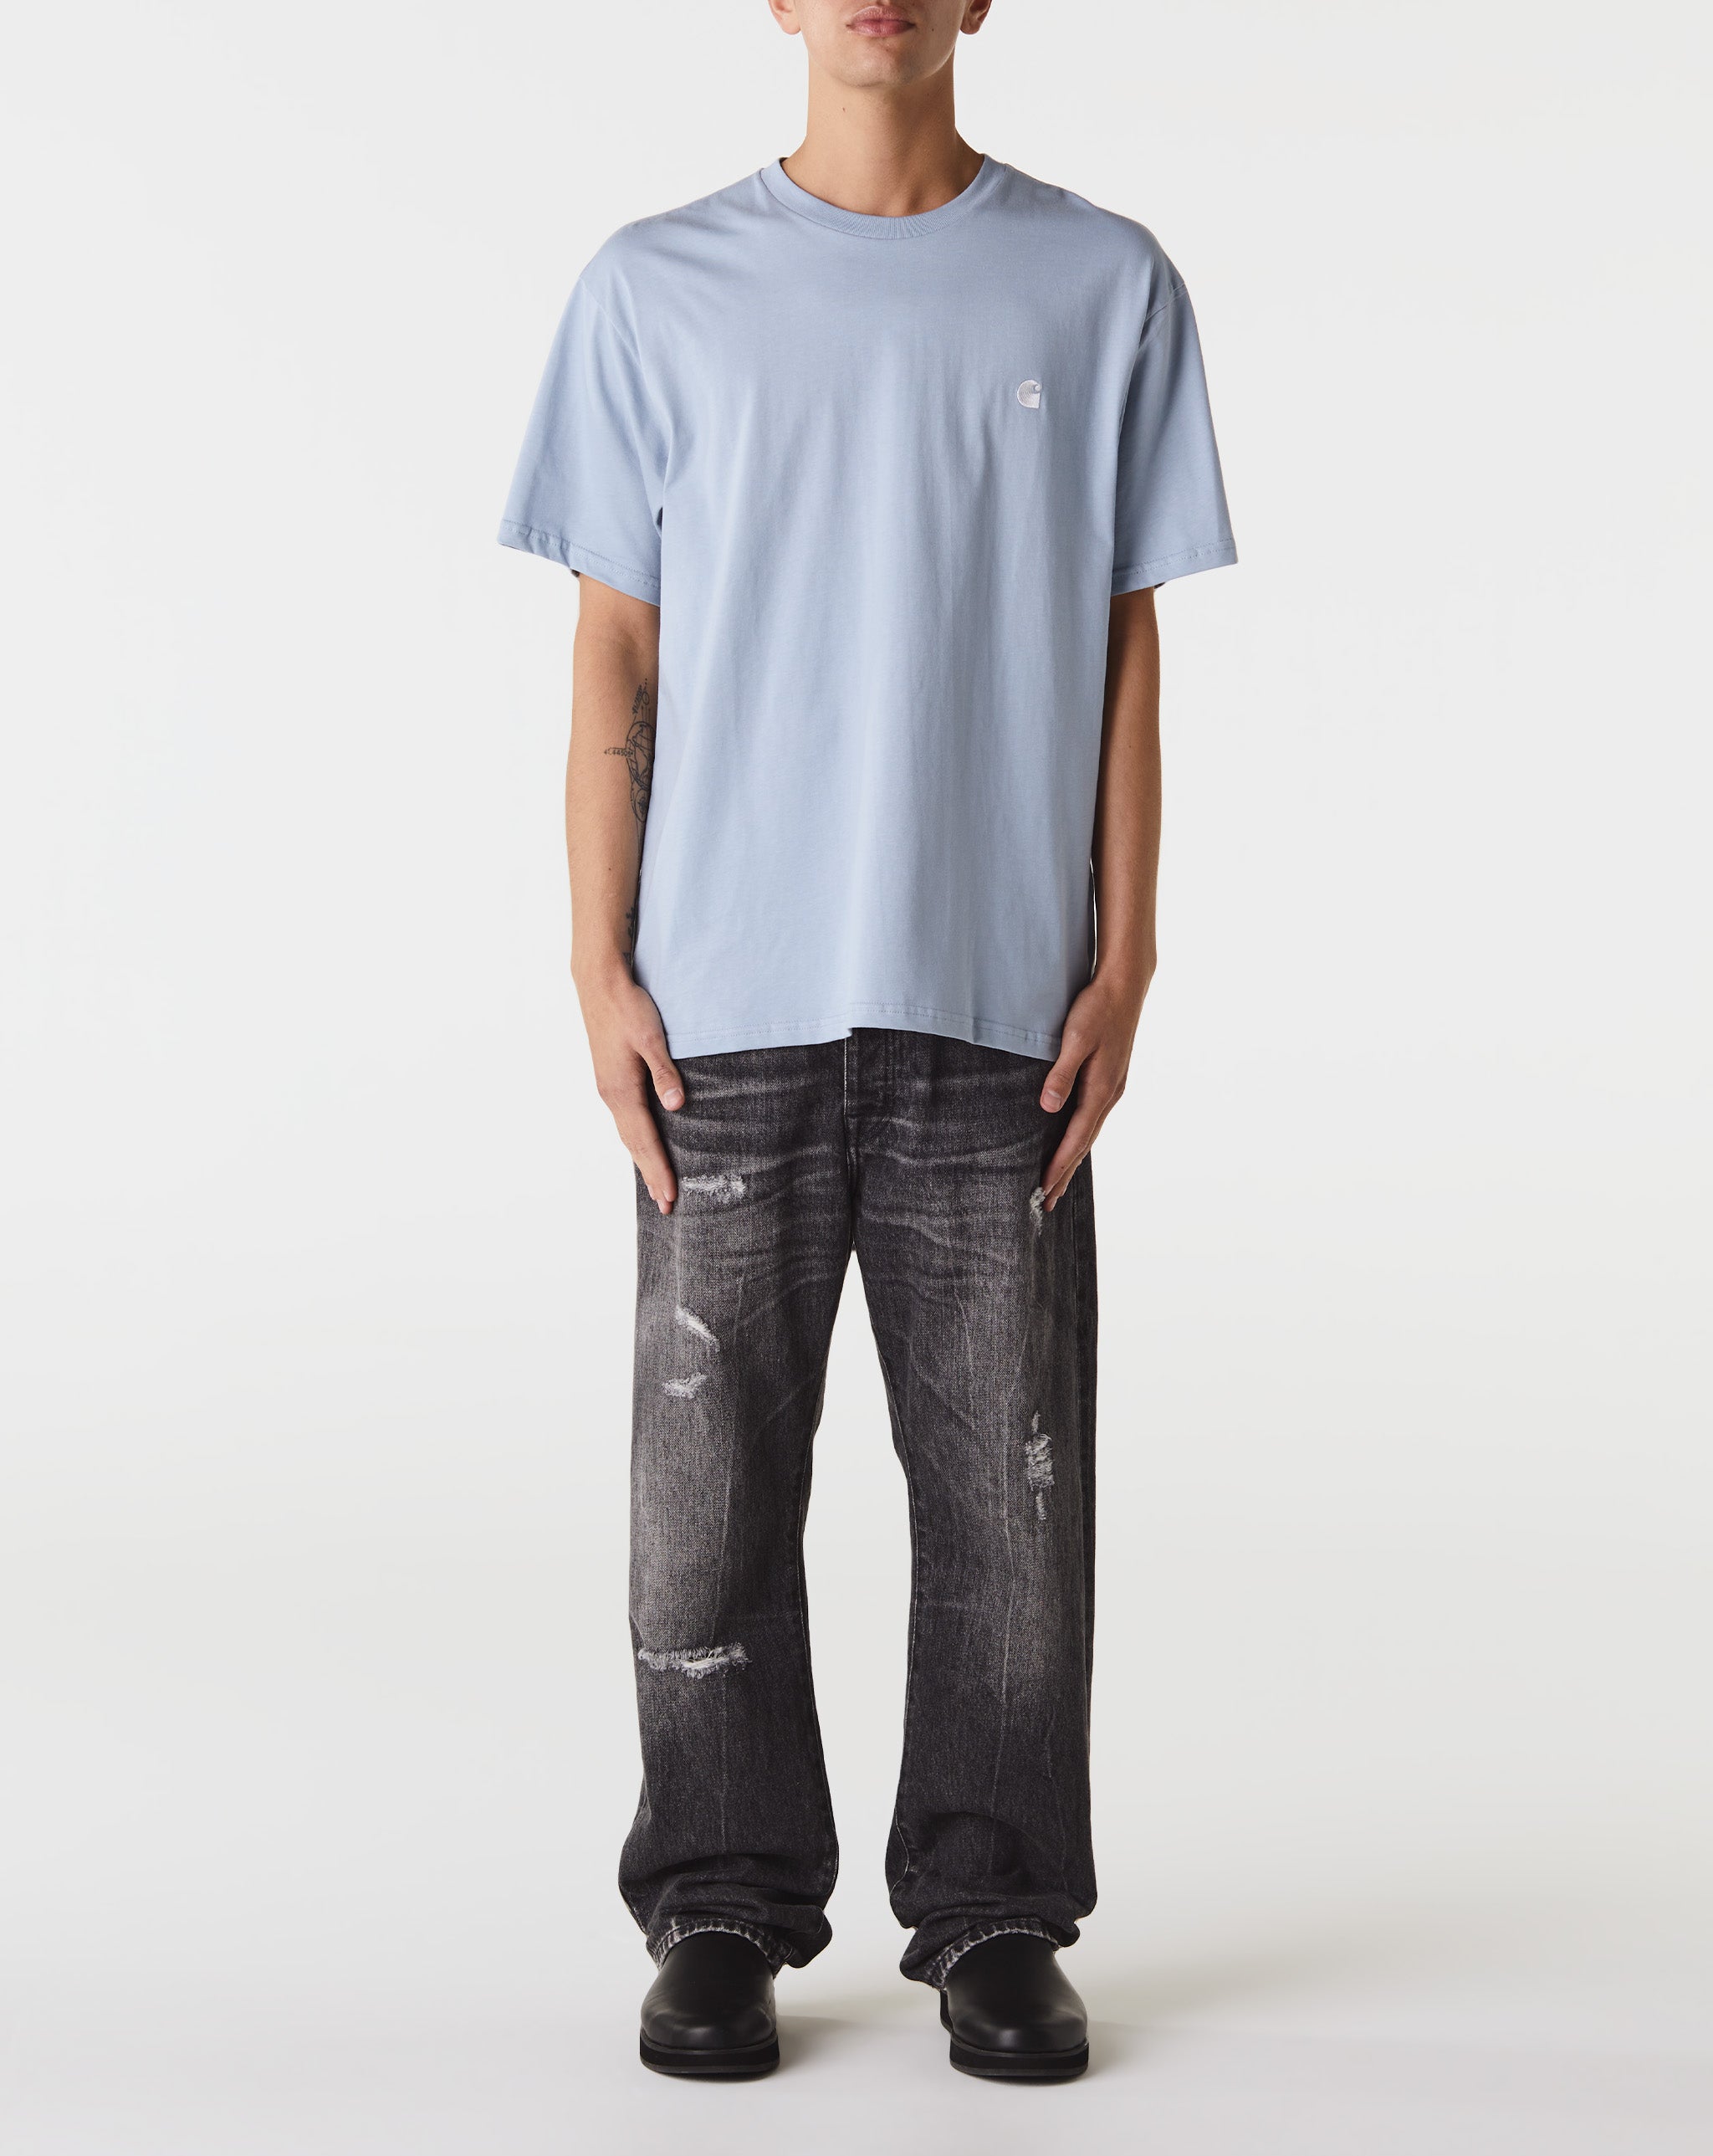 Carhartt WIP Madison T-Shirt  - Cheap Urlfreeze Jordan outlet